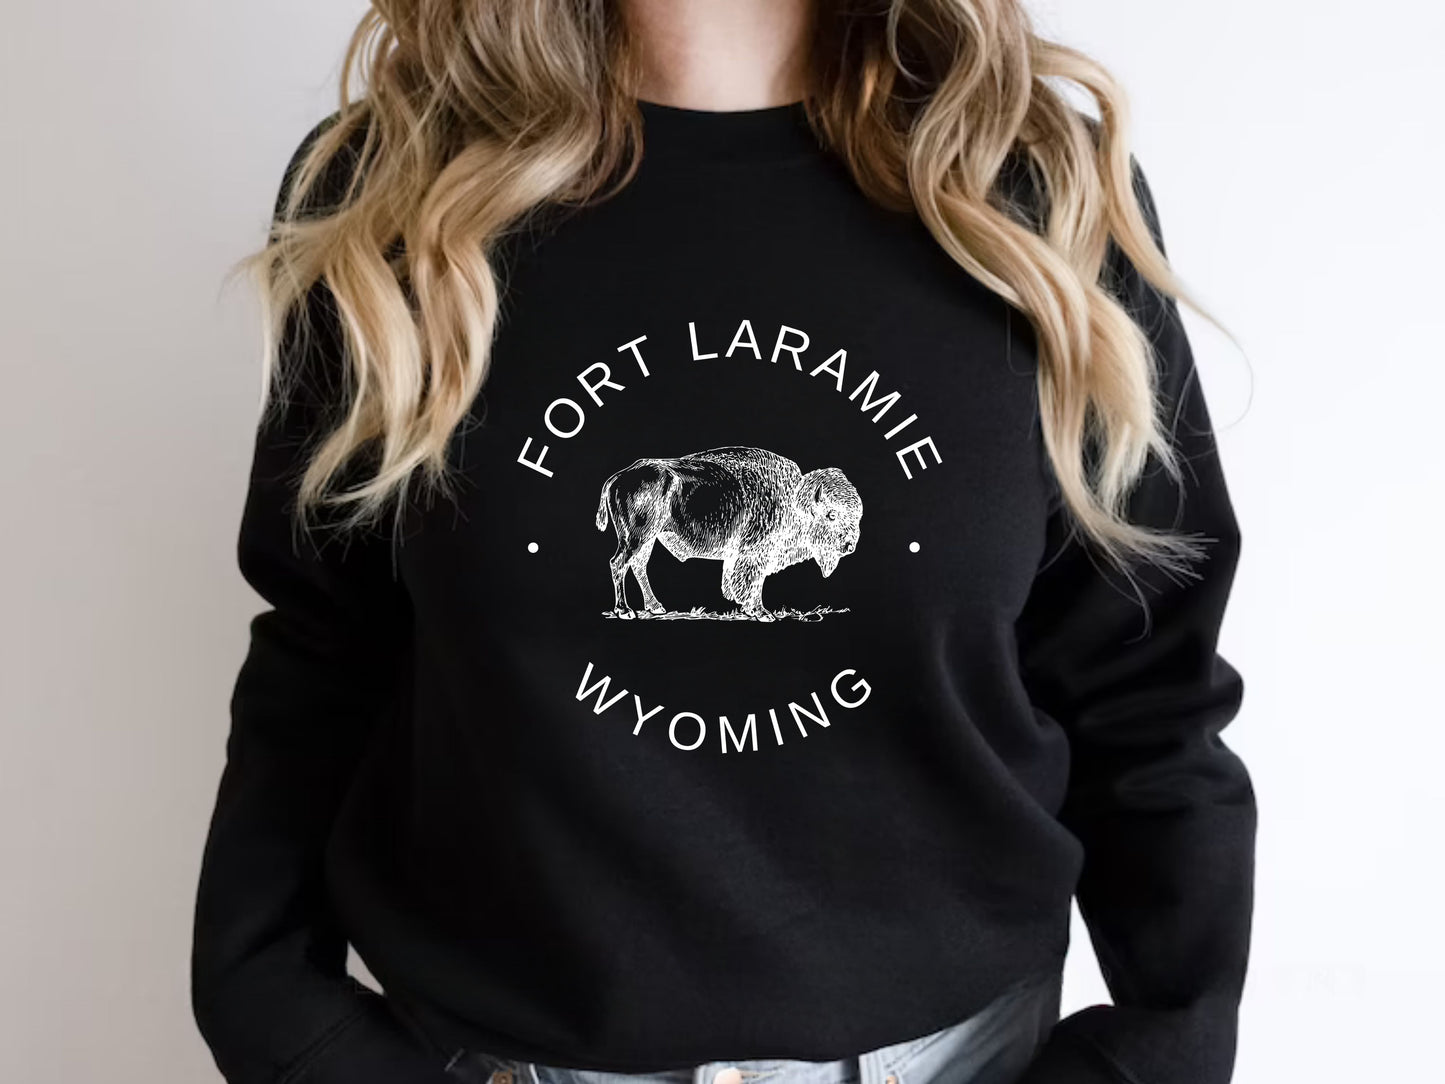 Fort Laramie Women Wyoming Sweatshirt